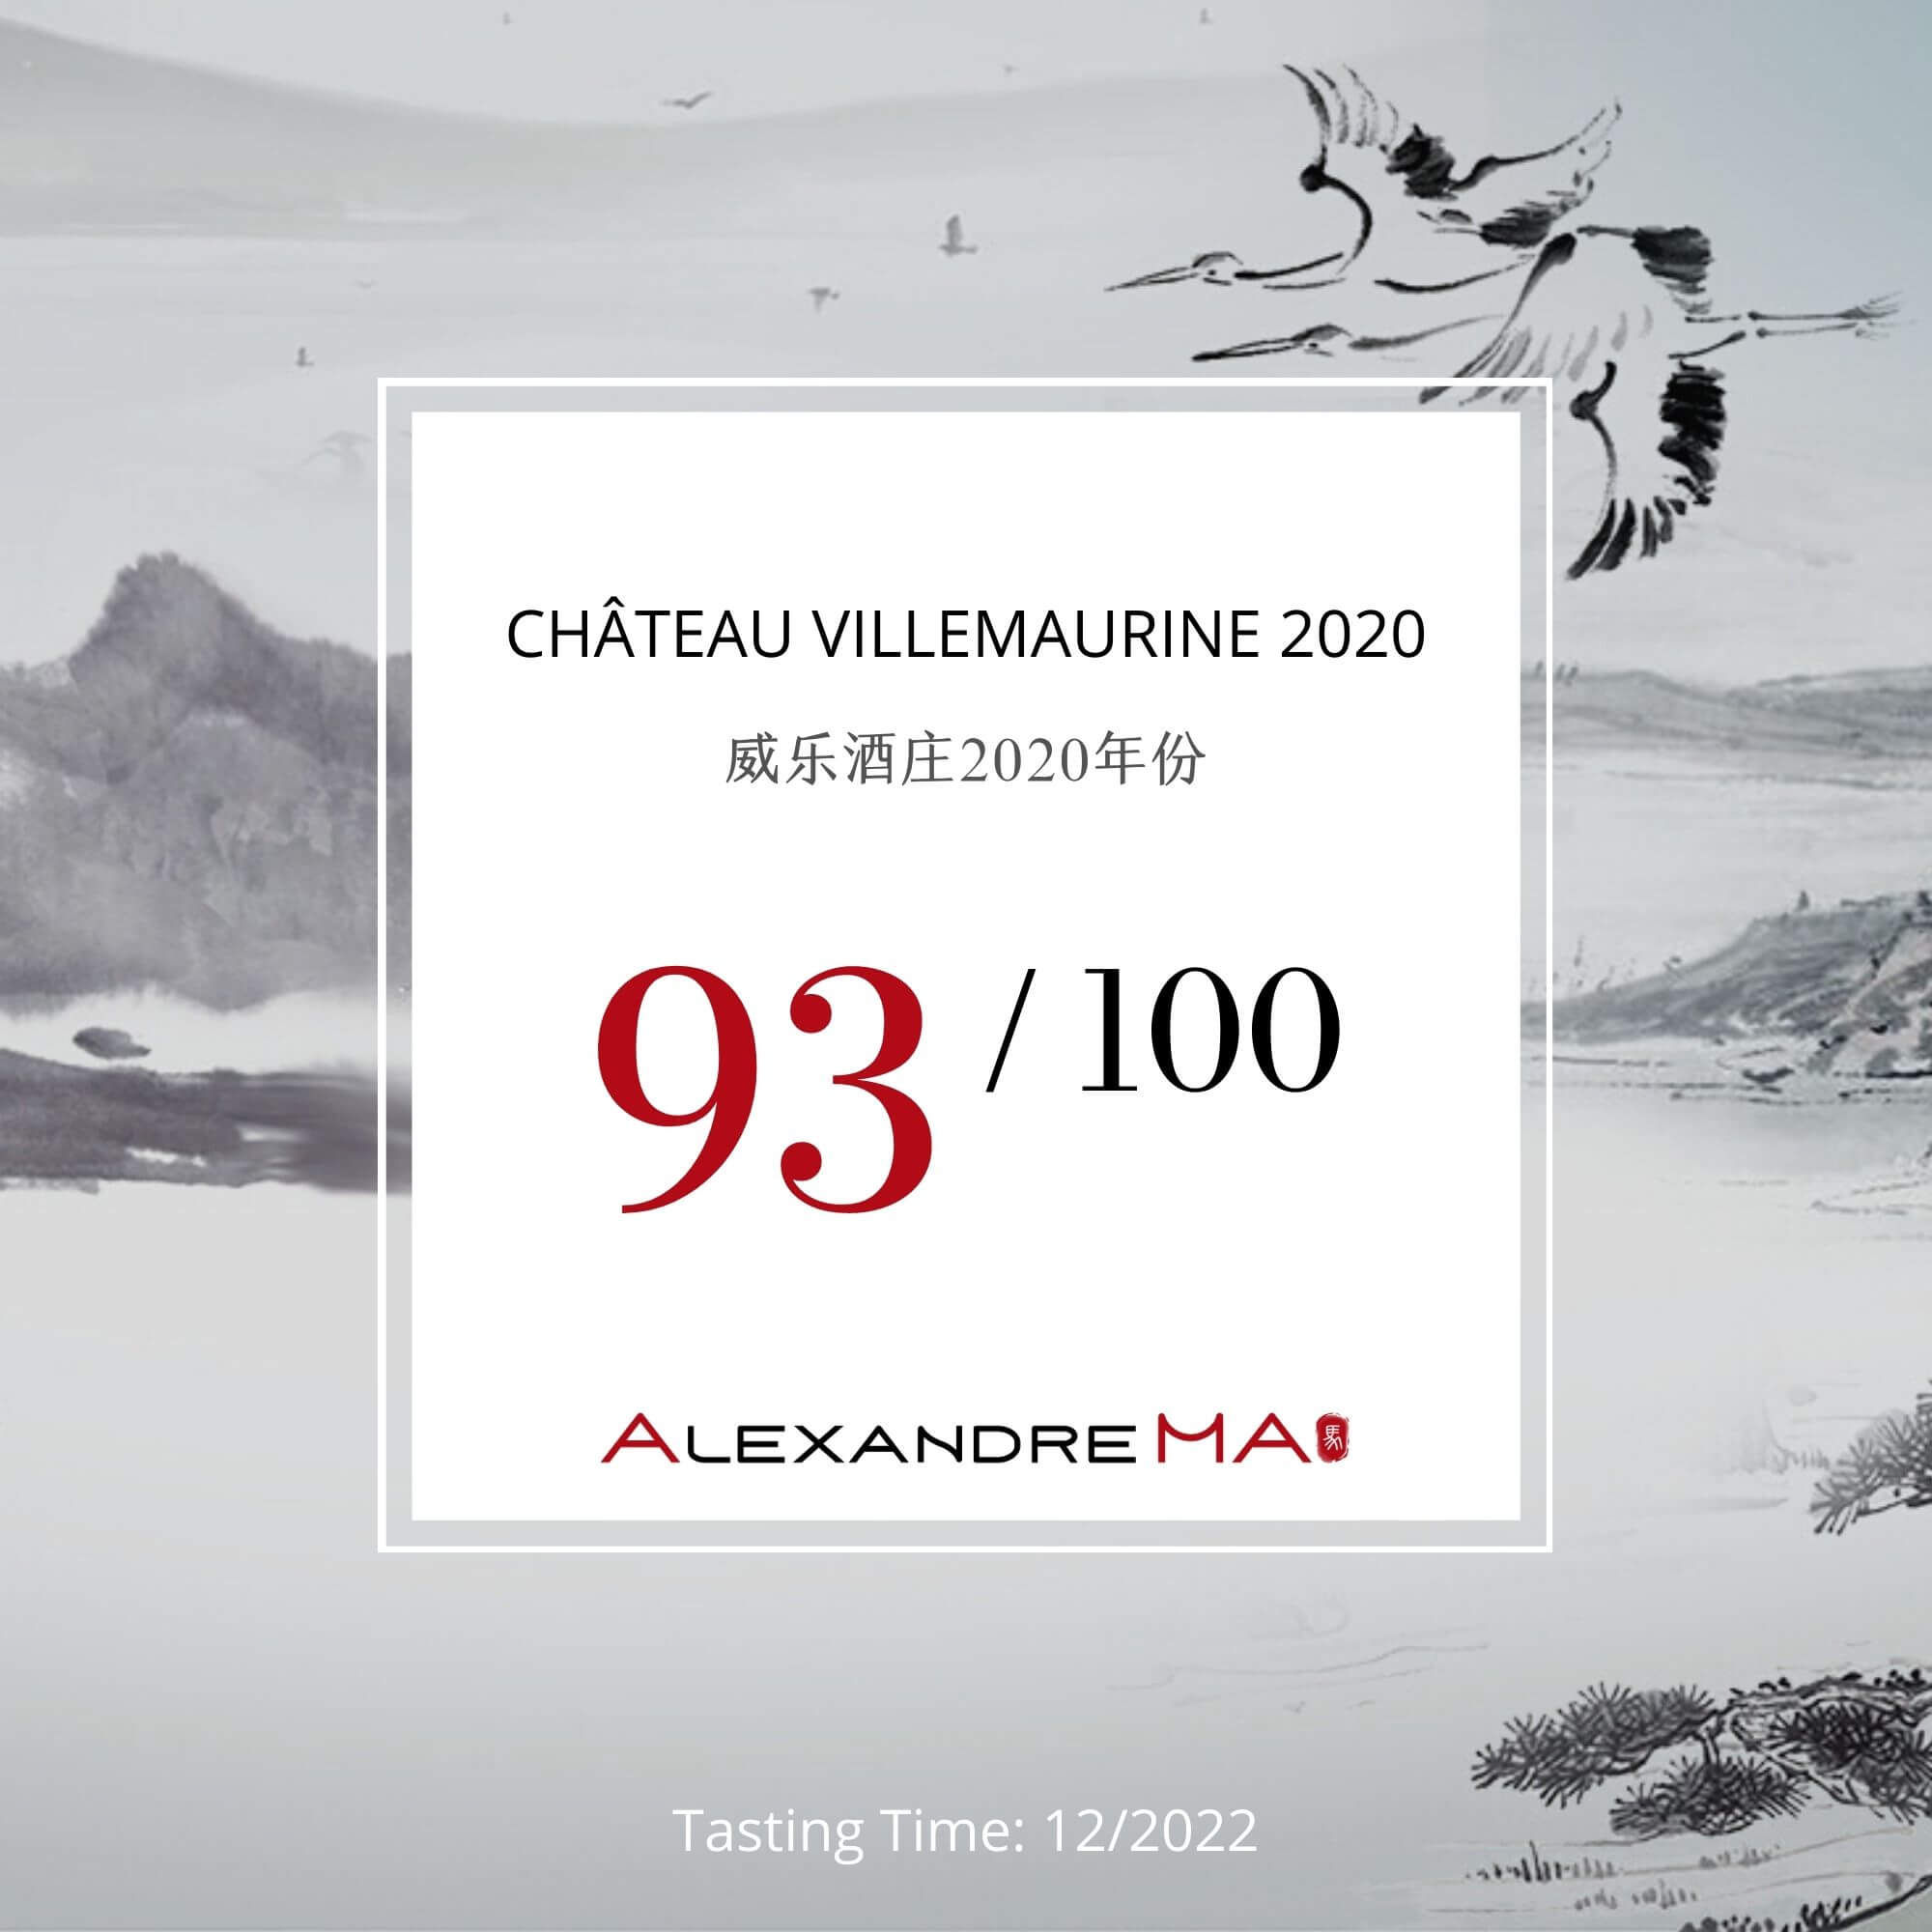 Château Villemaurine 2020 - Alexandre MA